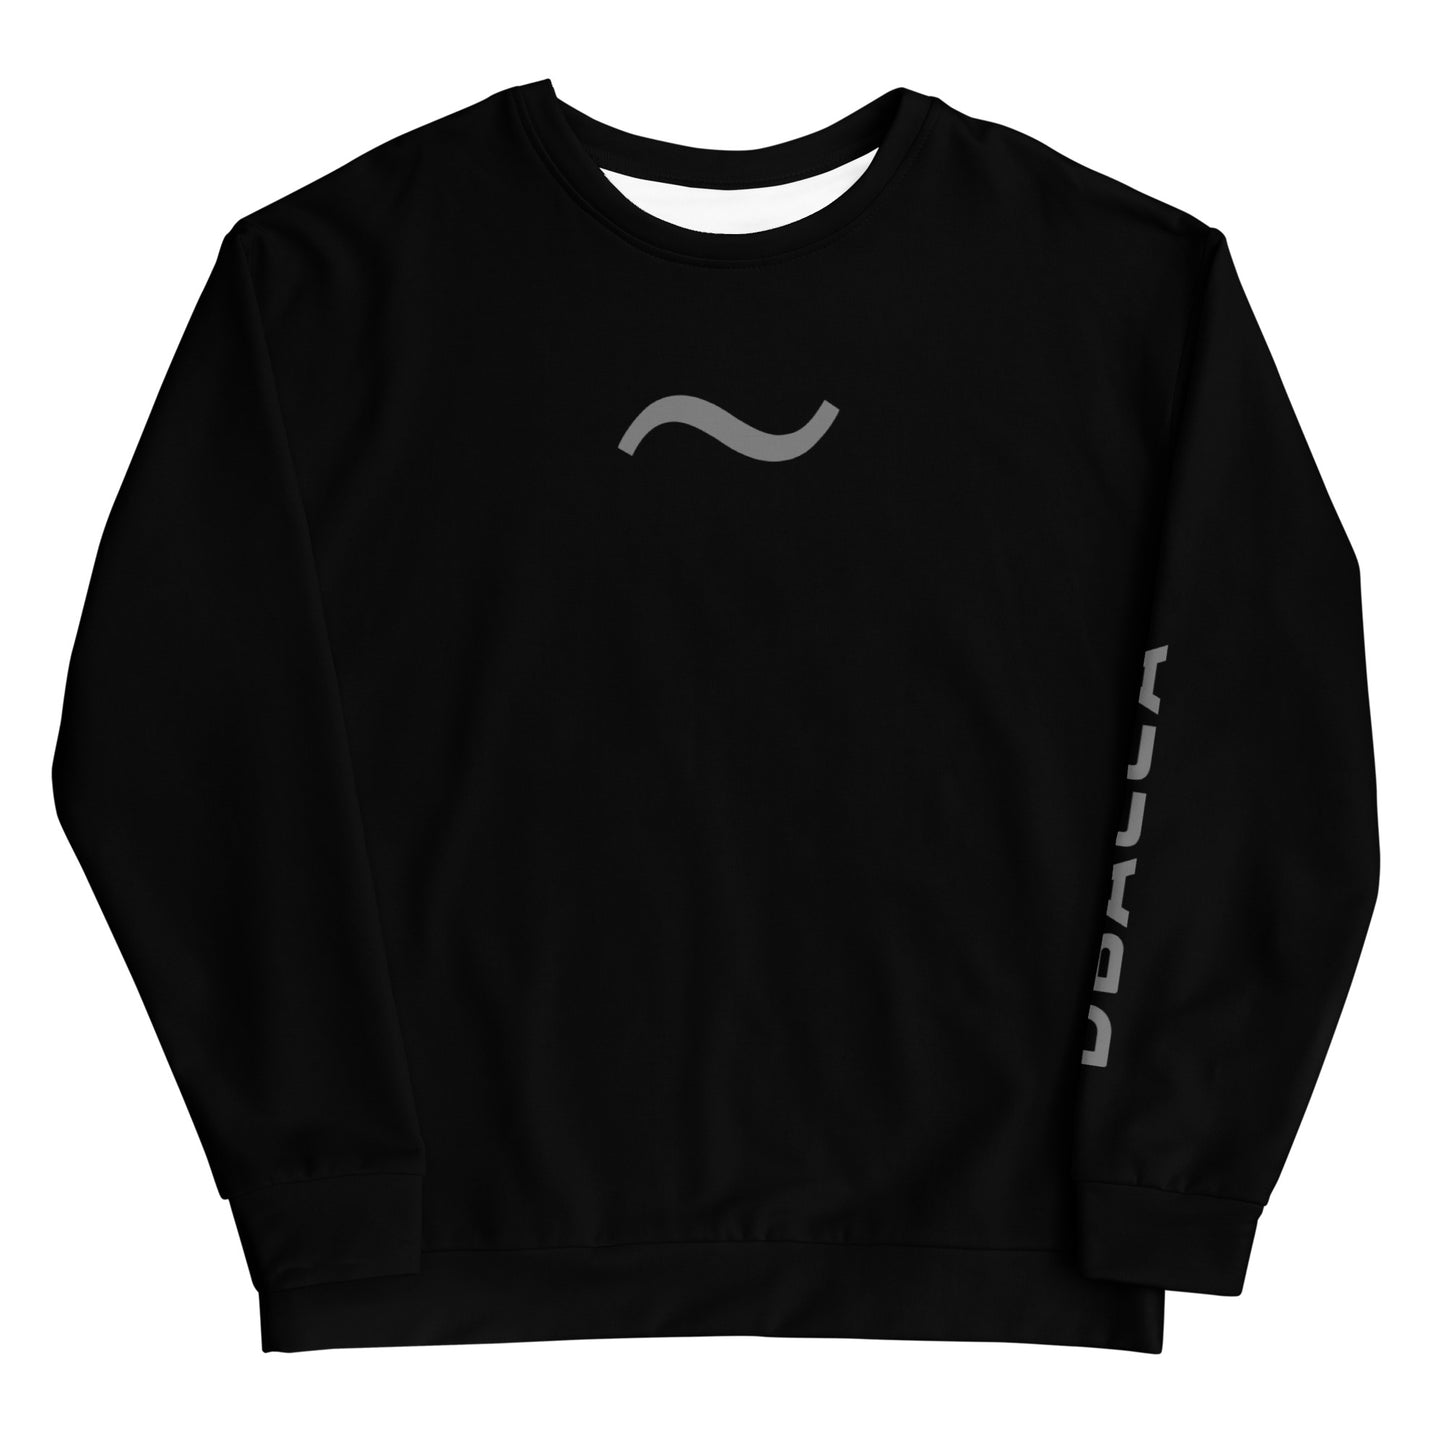 "RECYCLONE" The Unisex Eco SweatshirtII